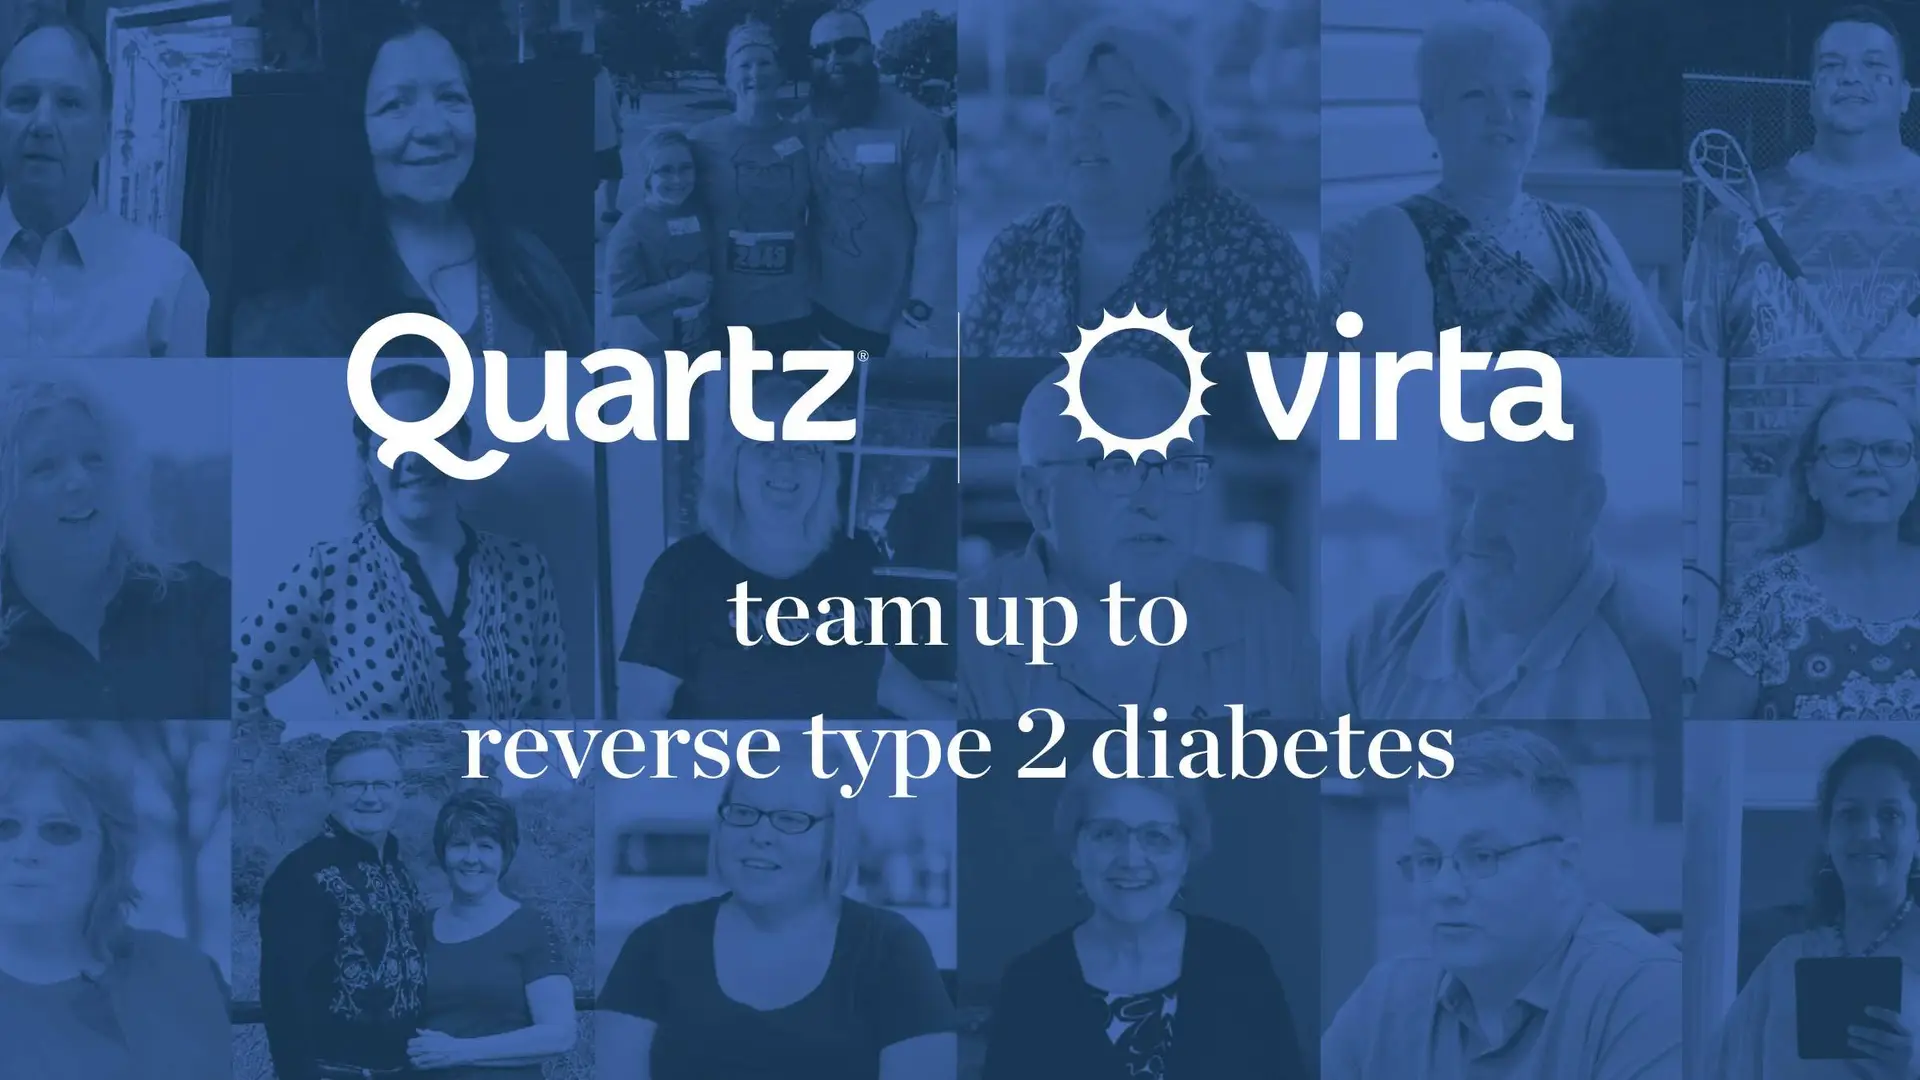 Quartz Logotipo de Virta - Equipo para revertir la diabetes de tipo 2 con imágenes de individuos